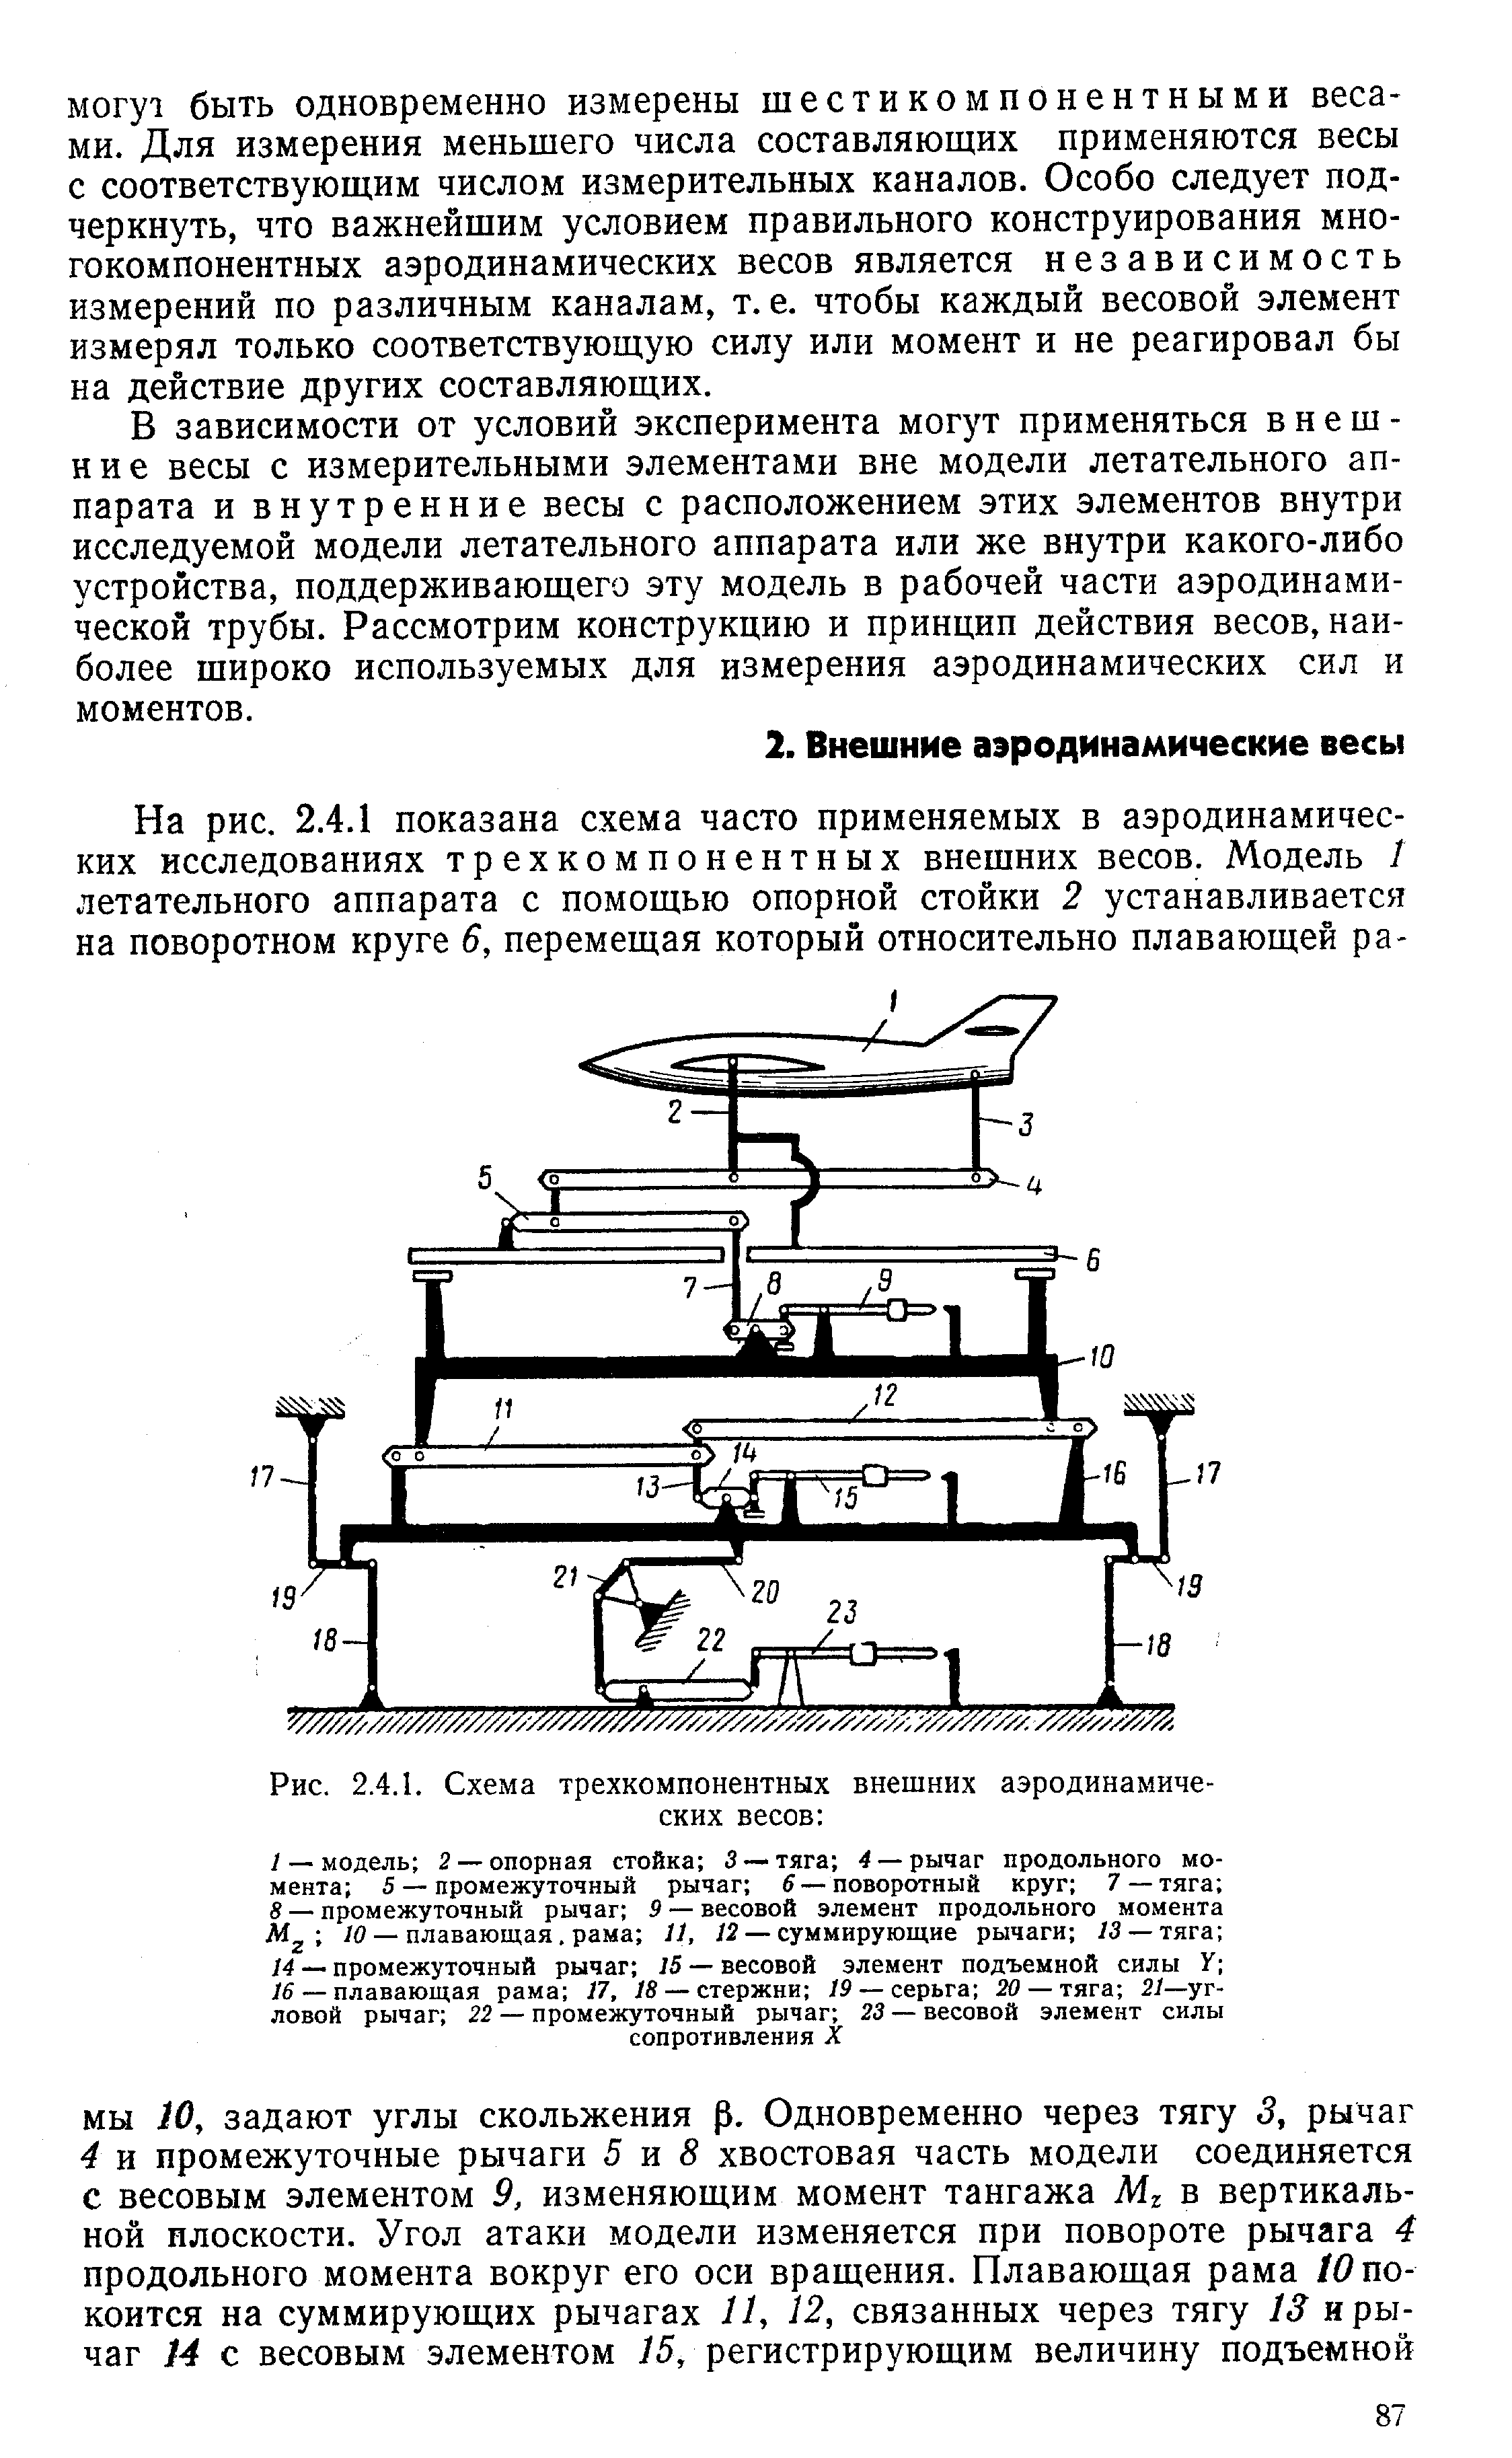 Рис. 2.4.1. Схема трехкомпонентных внешних аэродинамических весов 
